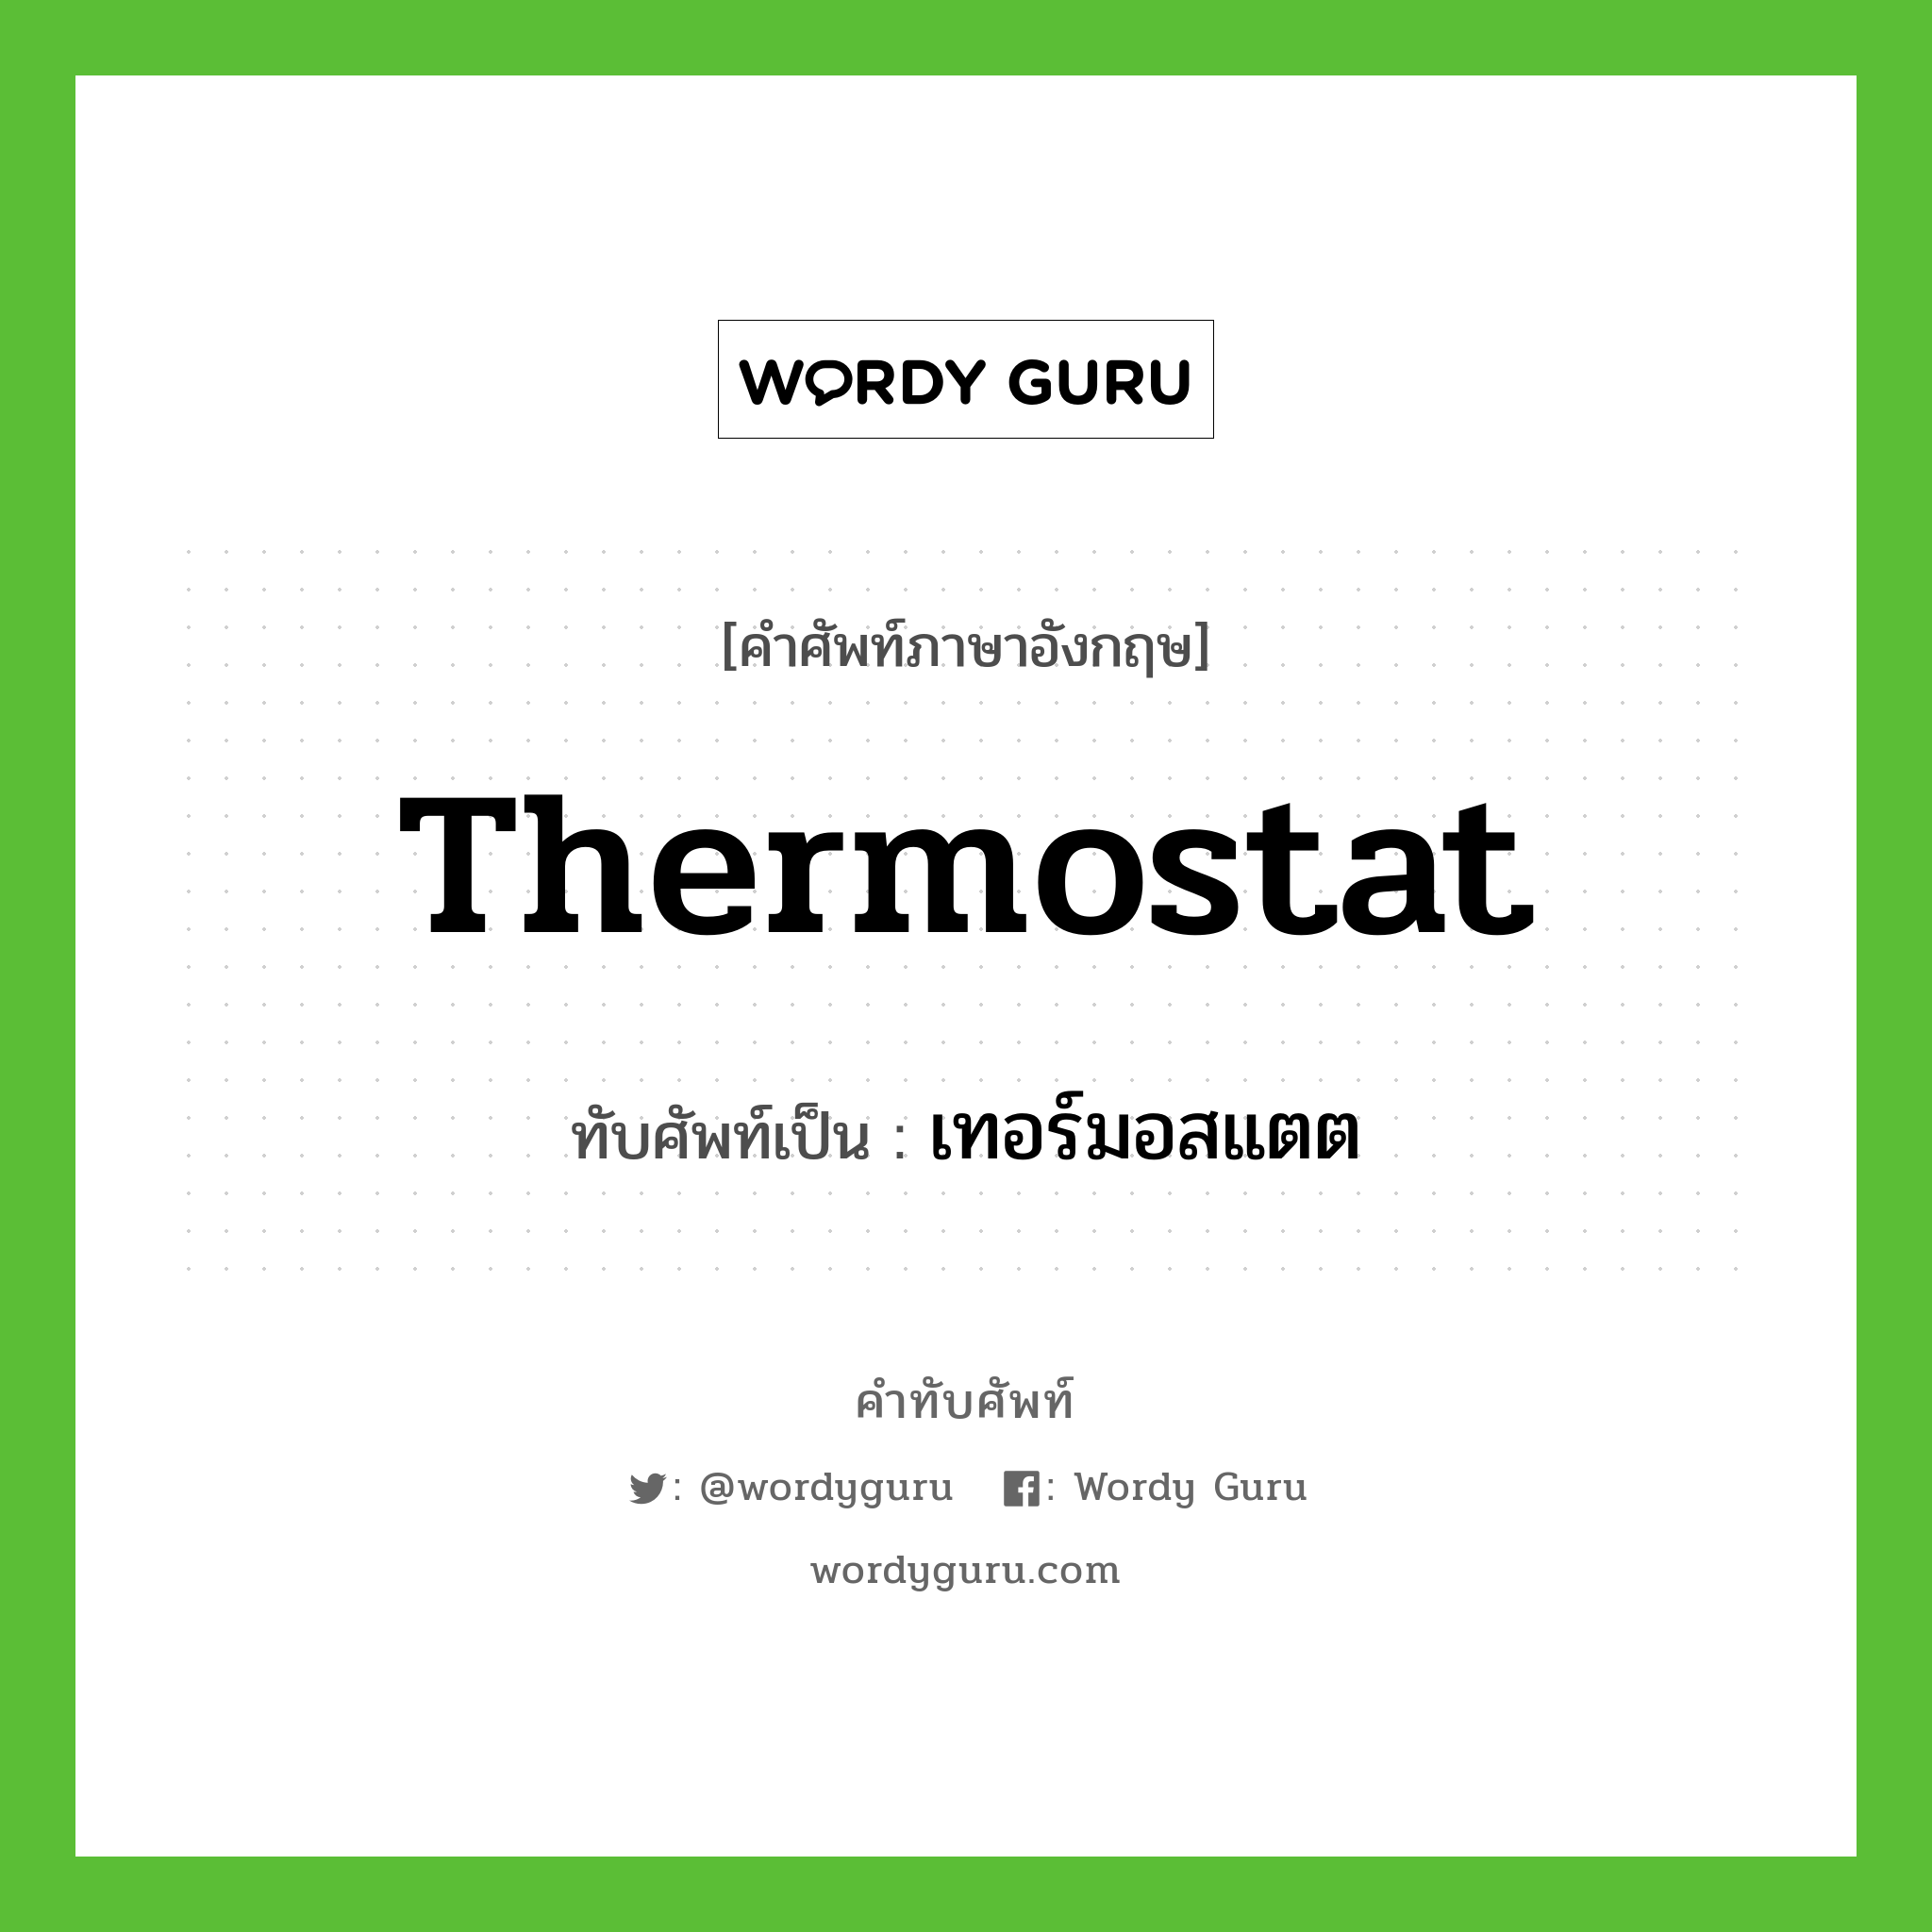 เทอร์มอสแตต เขียนอย่างไร?, คำศัพท์ภาษาอังกฤษ เทอร์มอสแตต ทับศัพท์เป็น thermostat